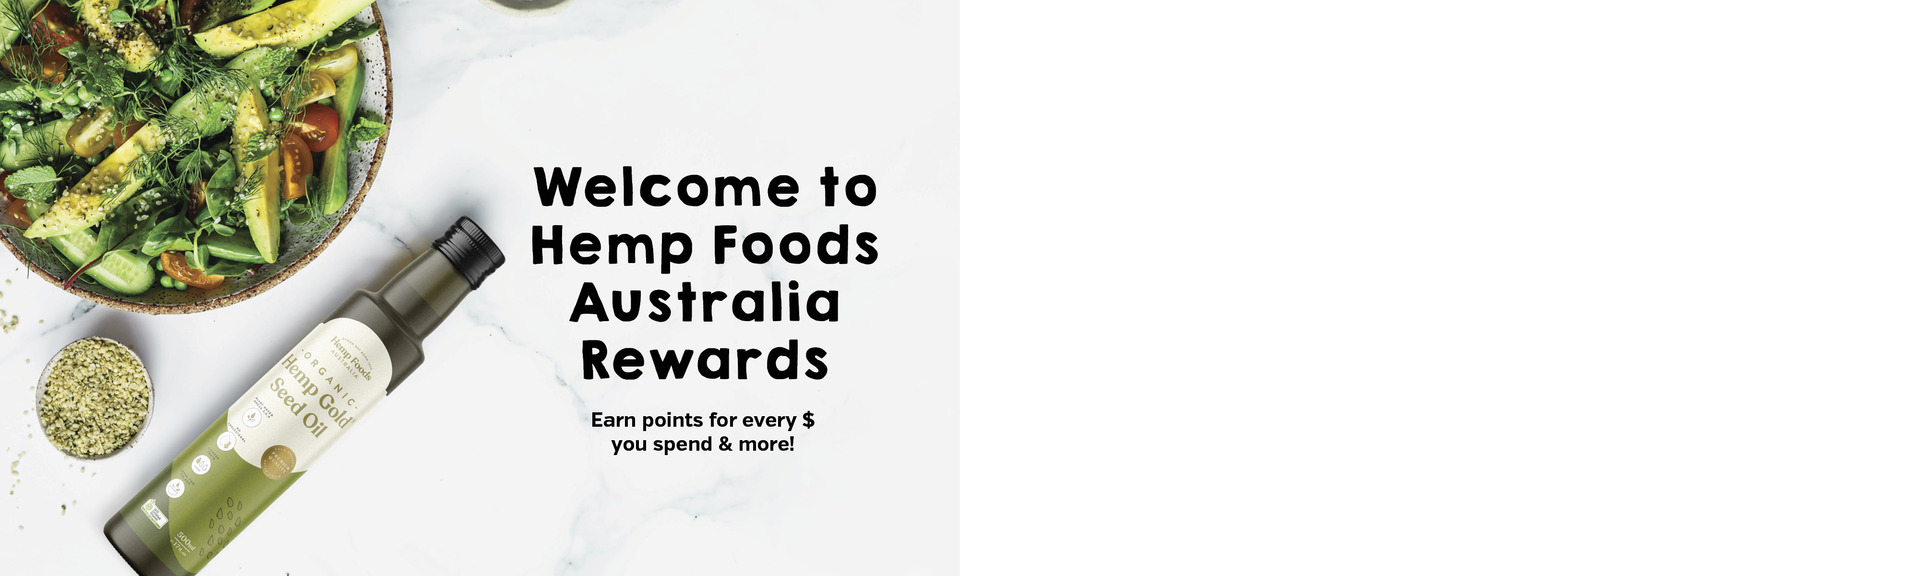 Hemp Foods Australia Rewards!